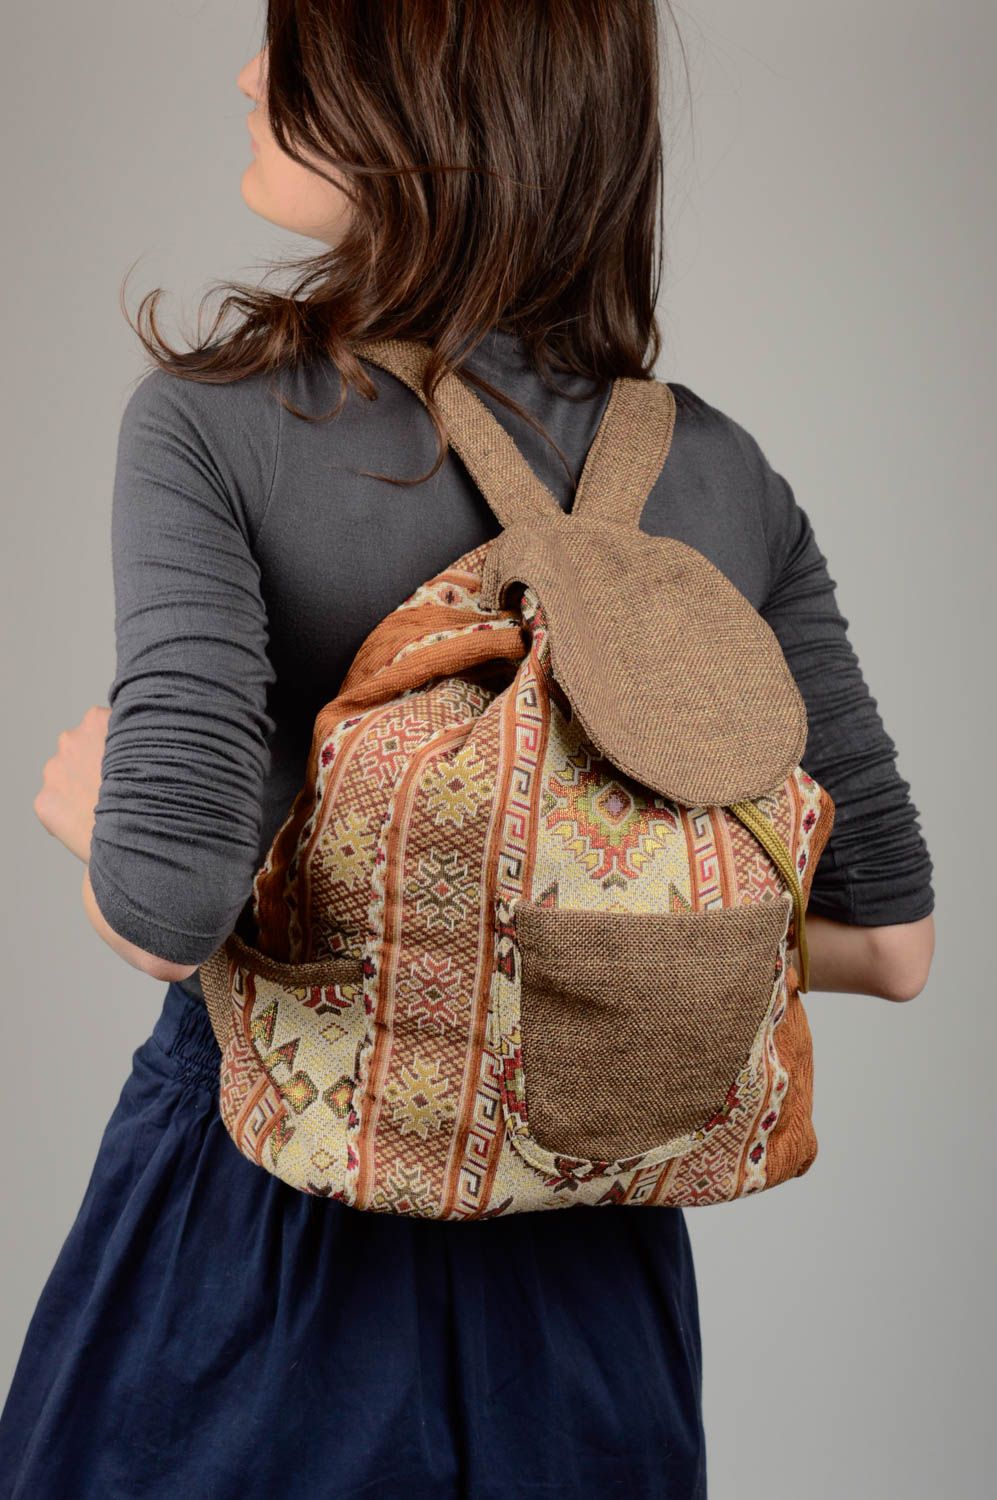 Handmade bag unusual backpack for women gift ideas designer bag for girls photo 2